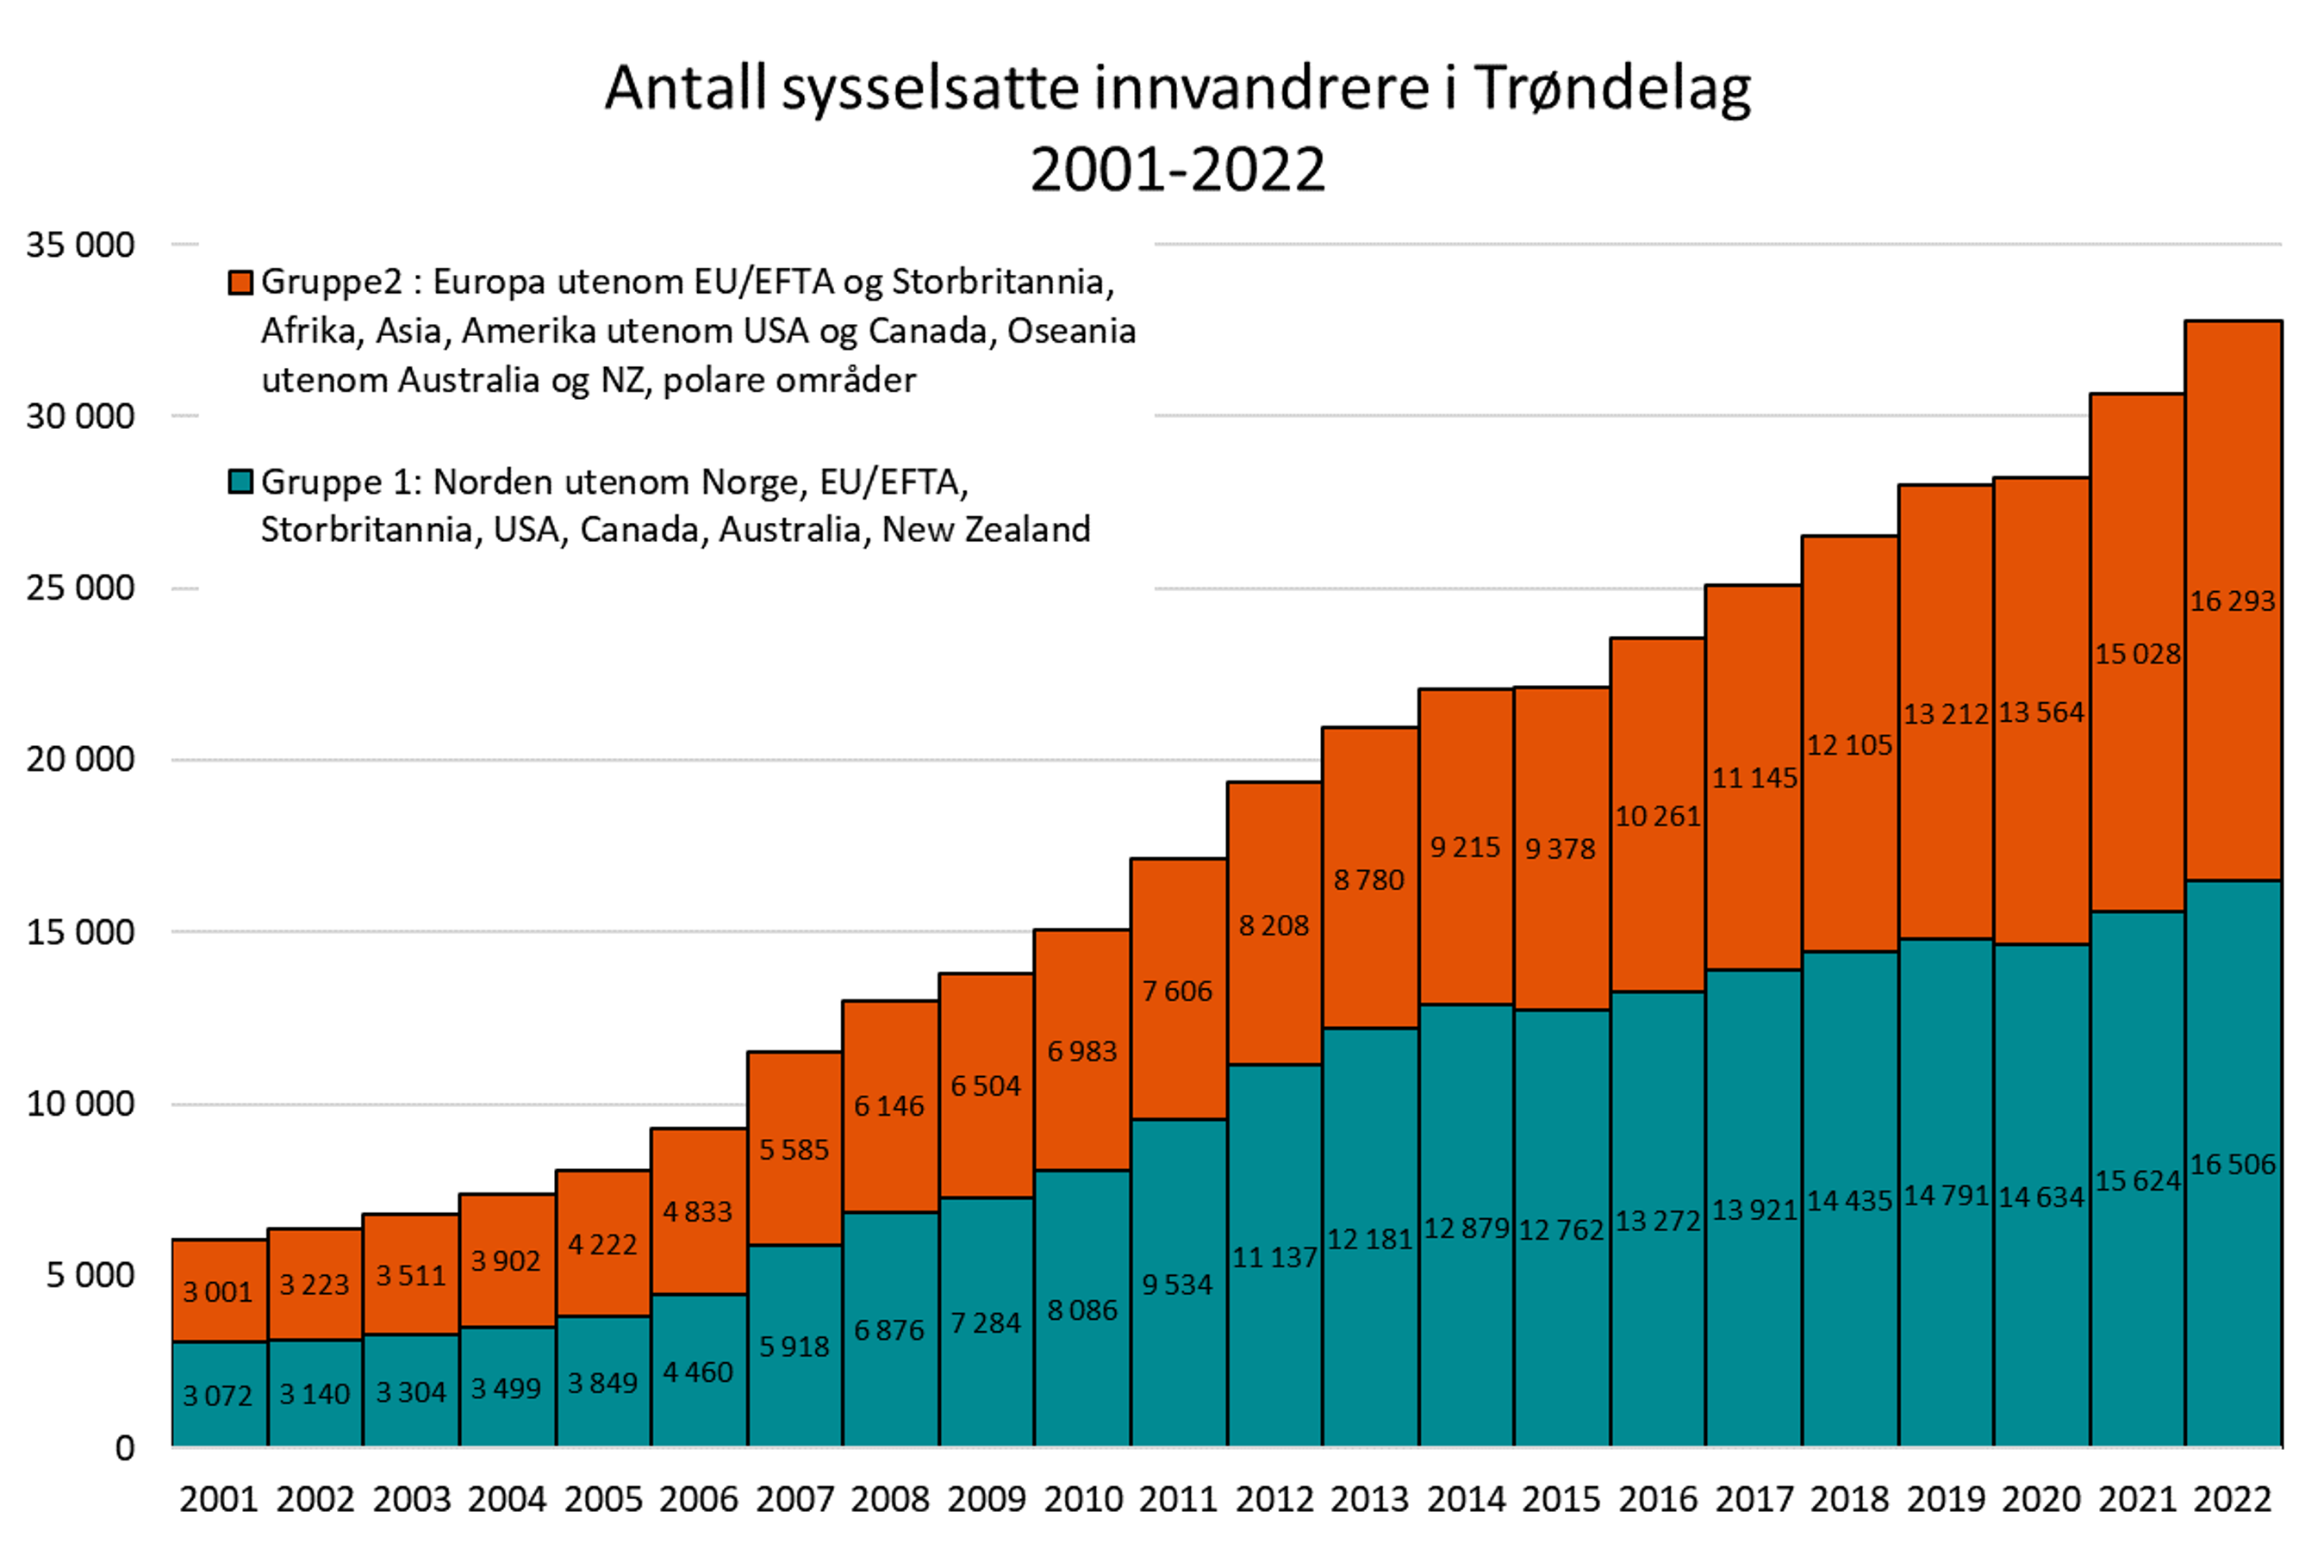 Antall sysselsatte innvandrere i Trøndelag 2001-2022